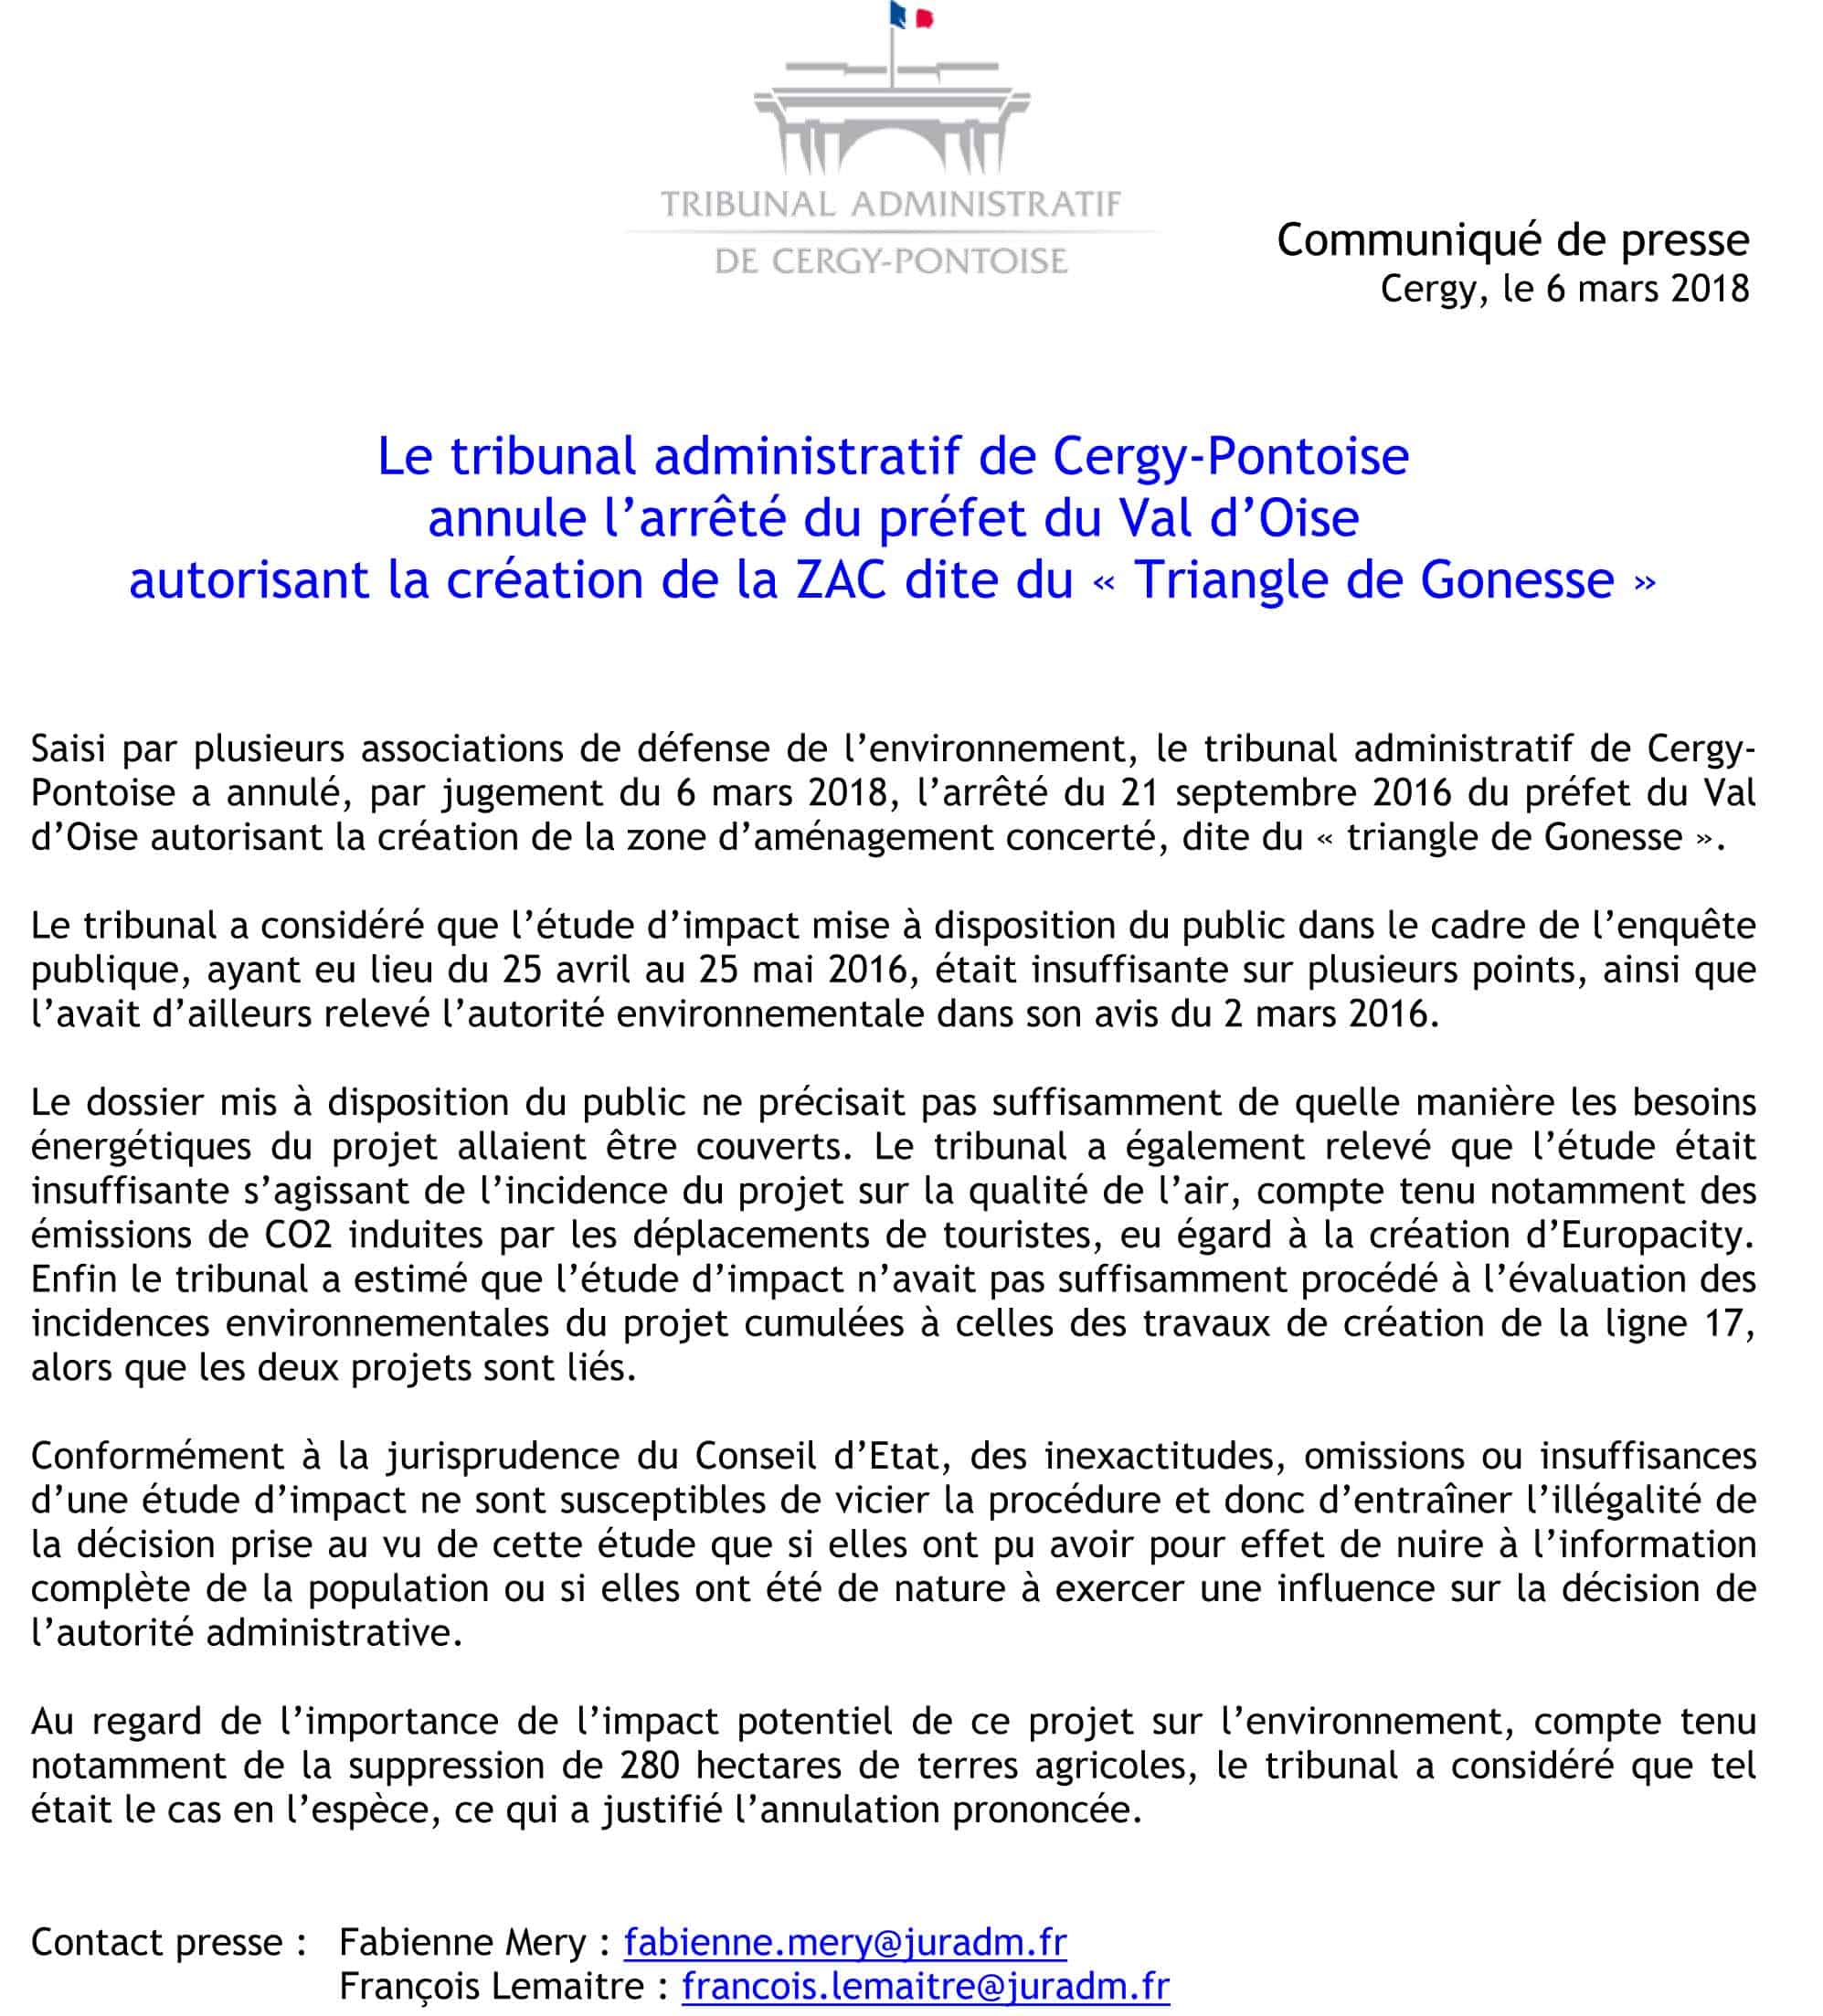 Communiqué de presse annulation ZAC du Triangle de Gonesse